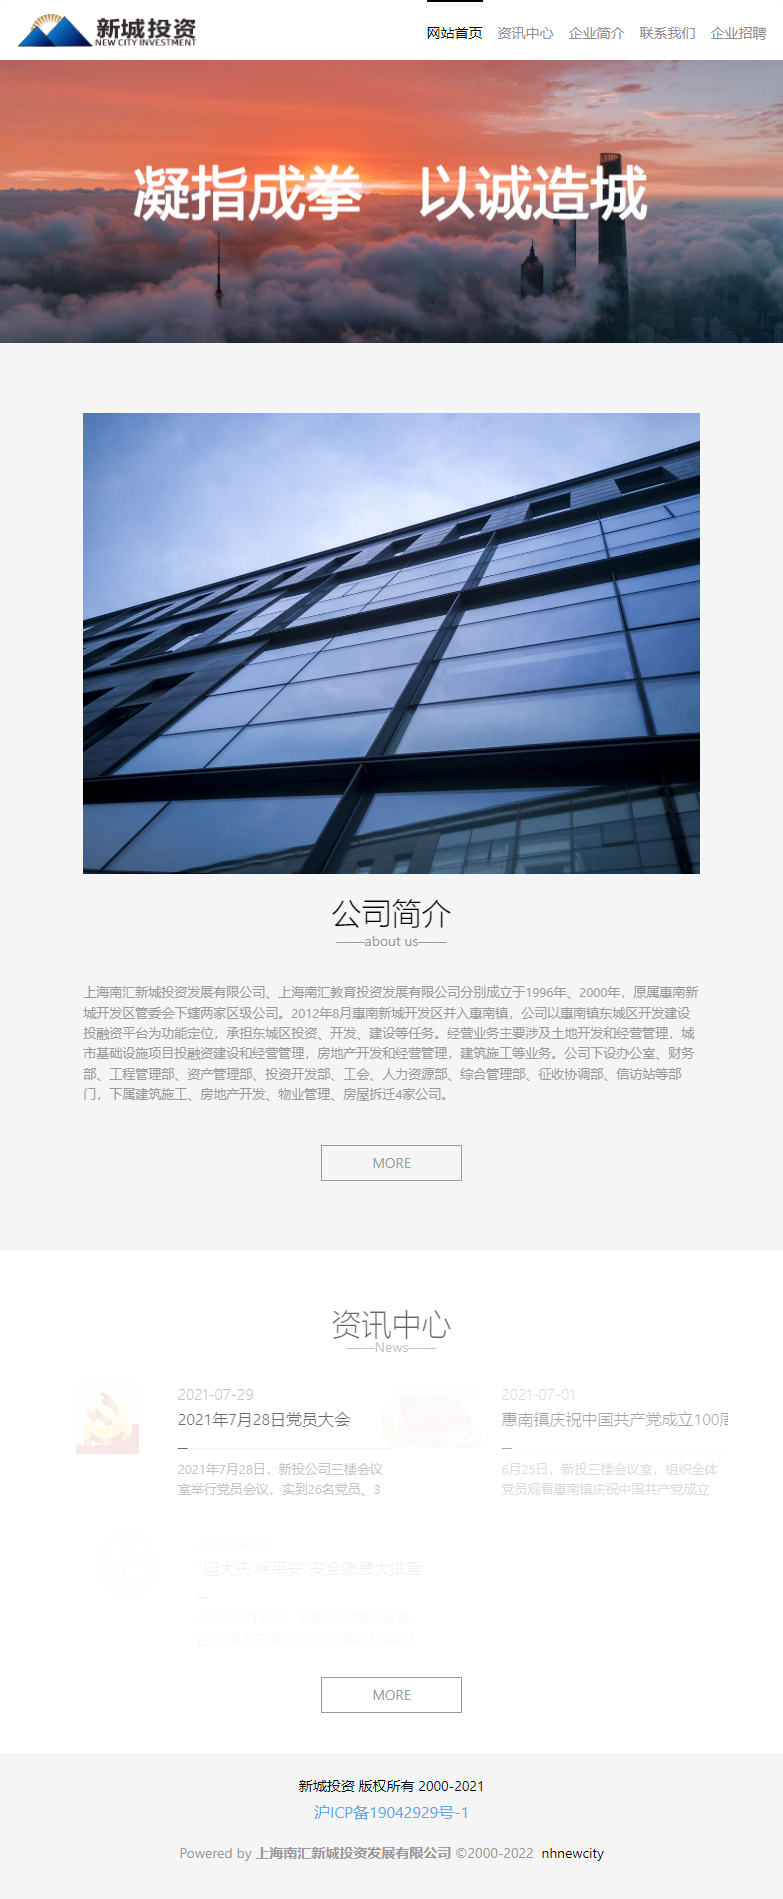 上海南汇新城投资发展有限公司网站案例